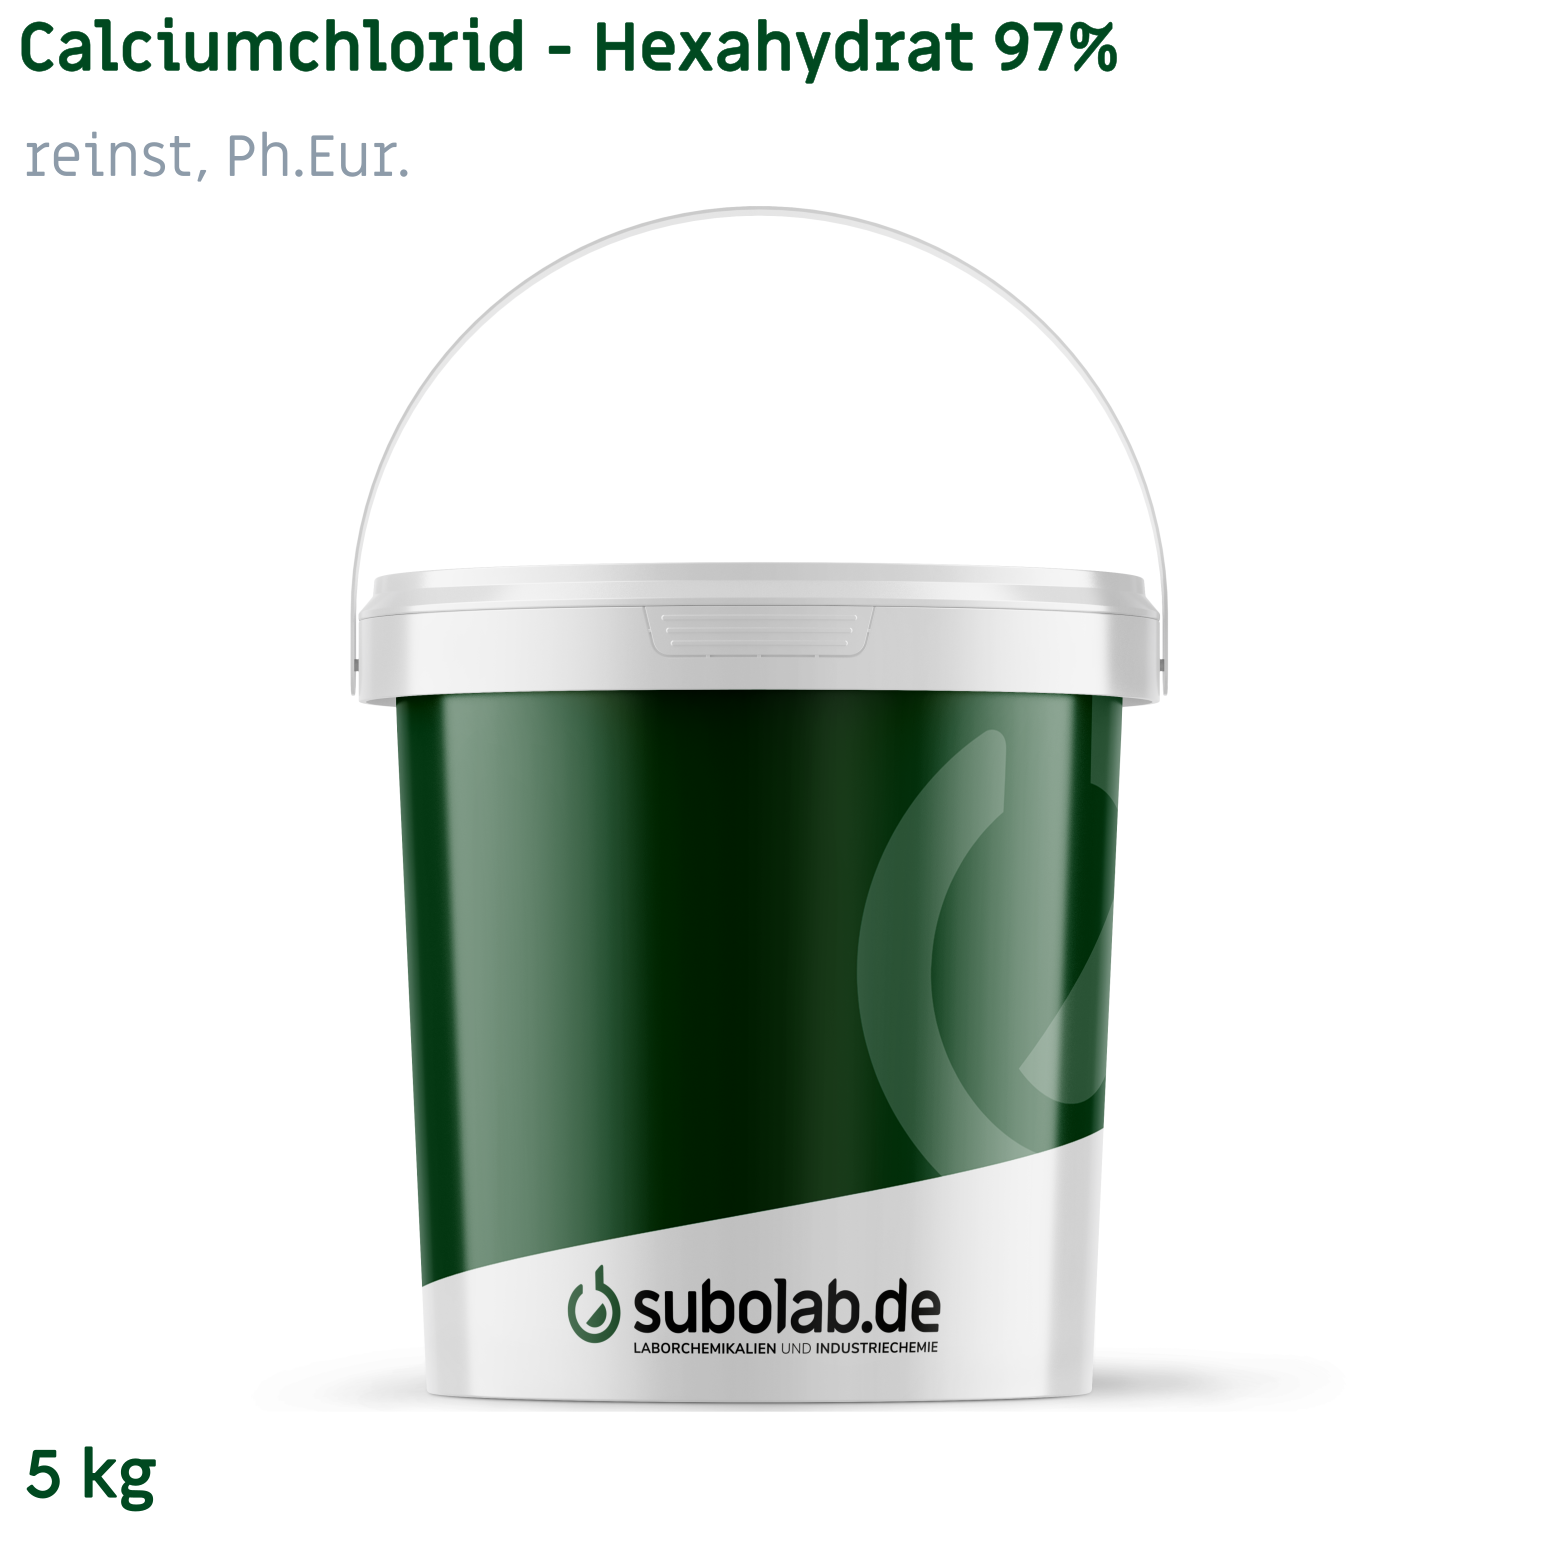 Bild von Calciumchlorid - Hexahydrat 97% reinst, Ph.Eur. (5 kg)